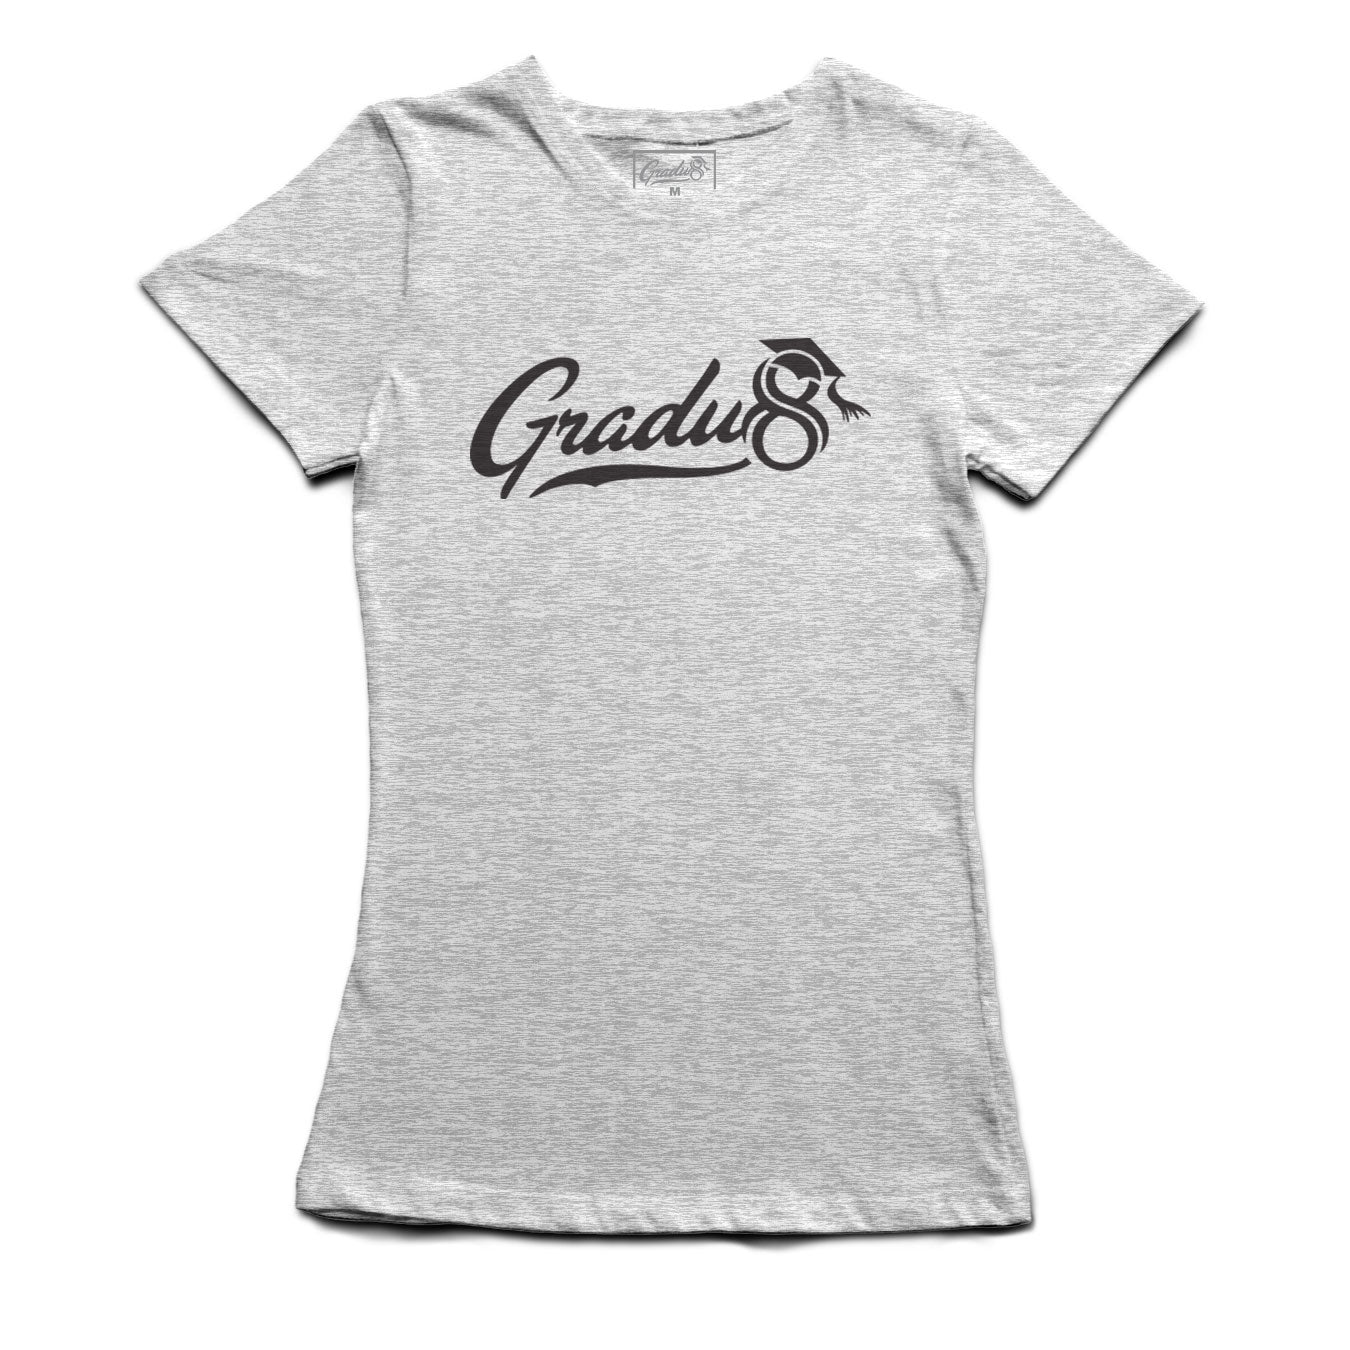 Women's Gradu8 Script Logo Premium T-shirt - Heather Gray